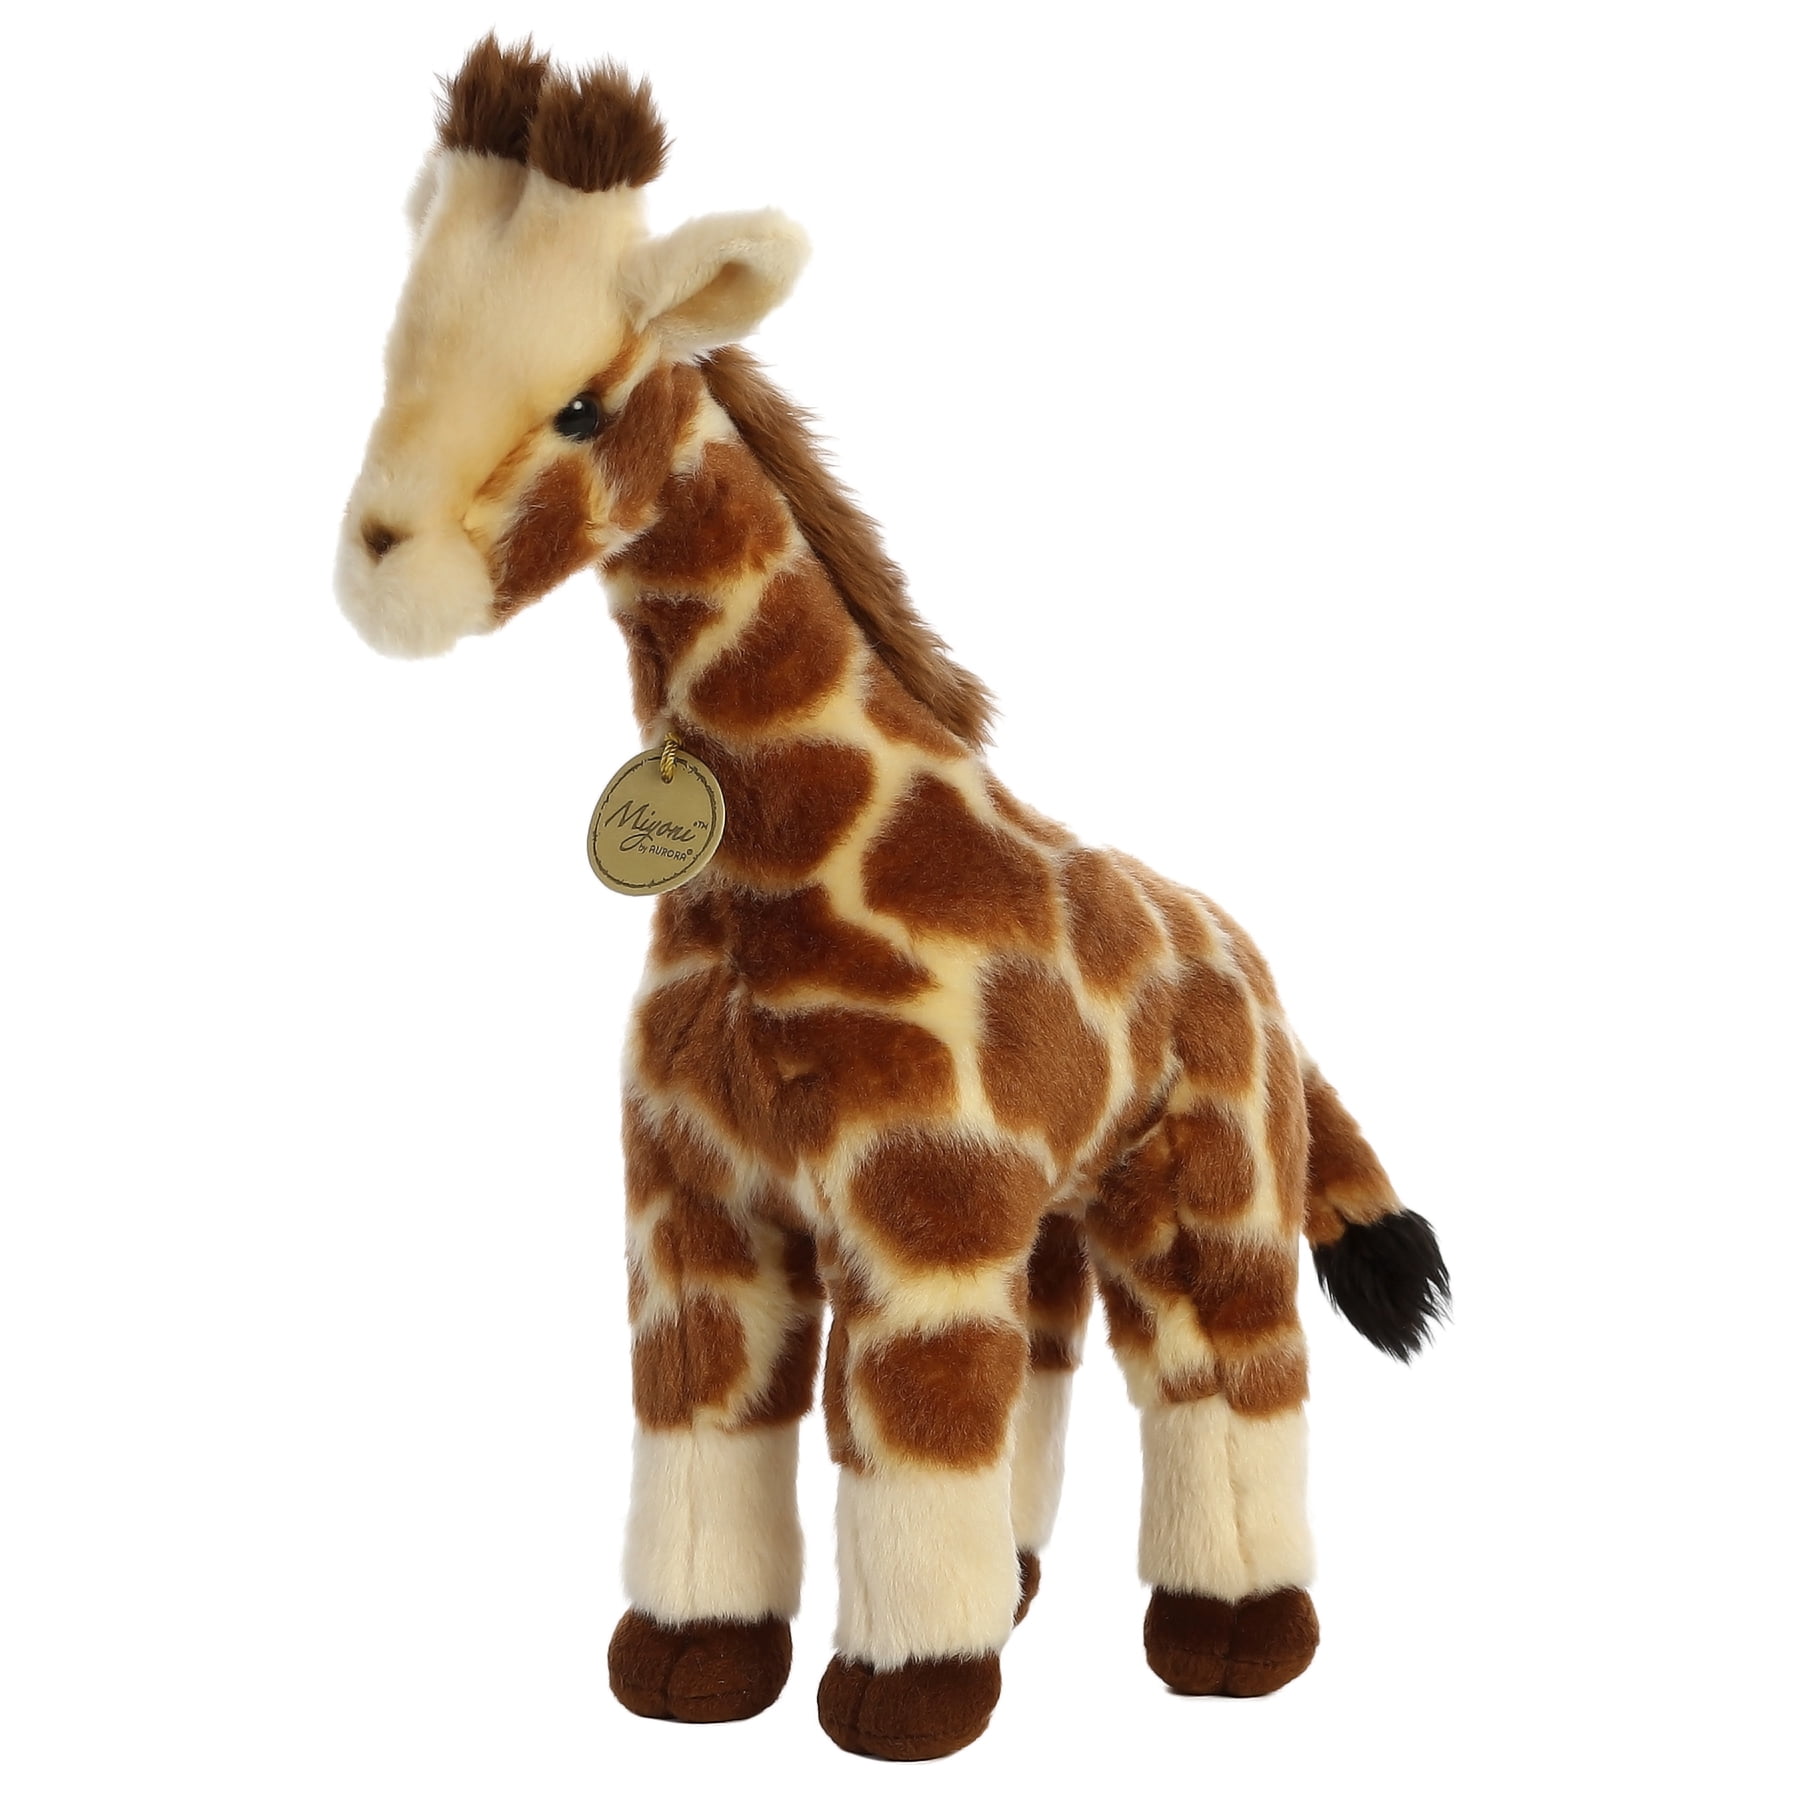 Giraffe Childrens Stuffed Soft Cuddly Giraffe Toy Safari Jungle Animal Plush hand made giraffe